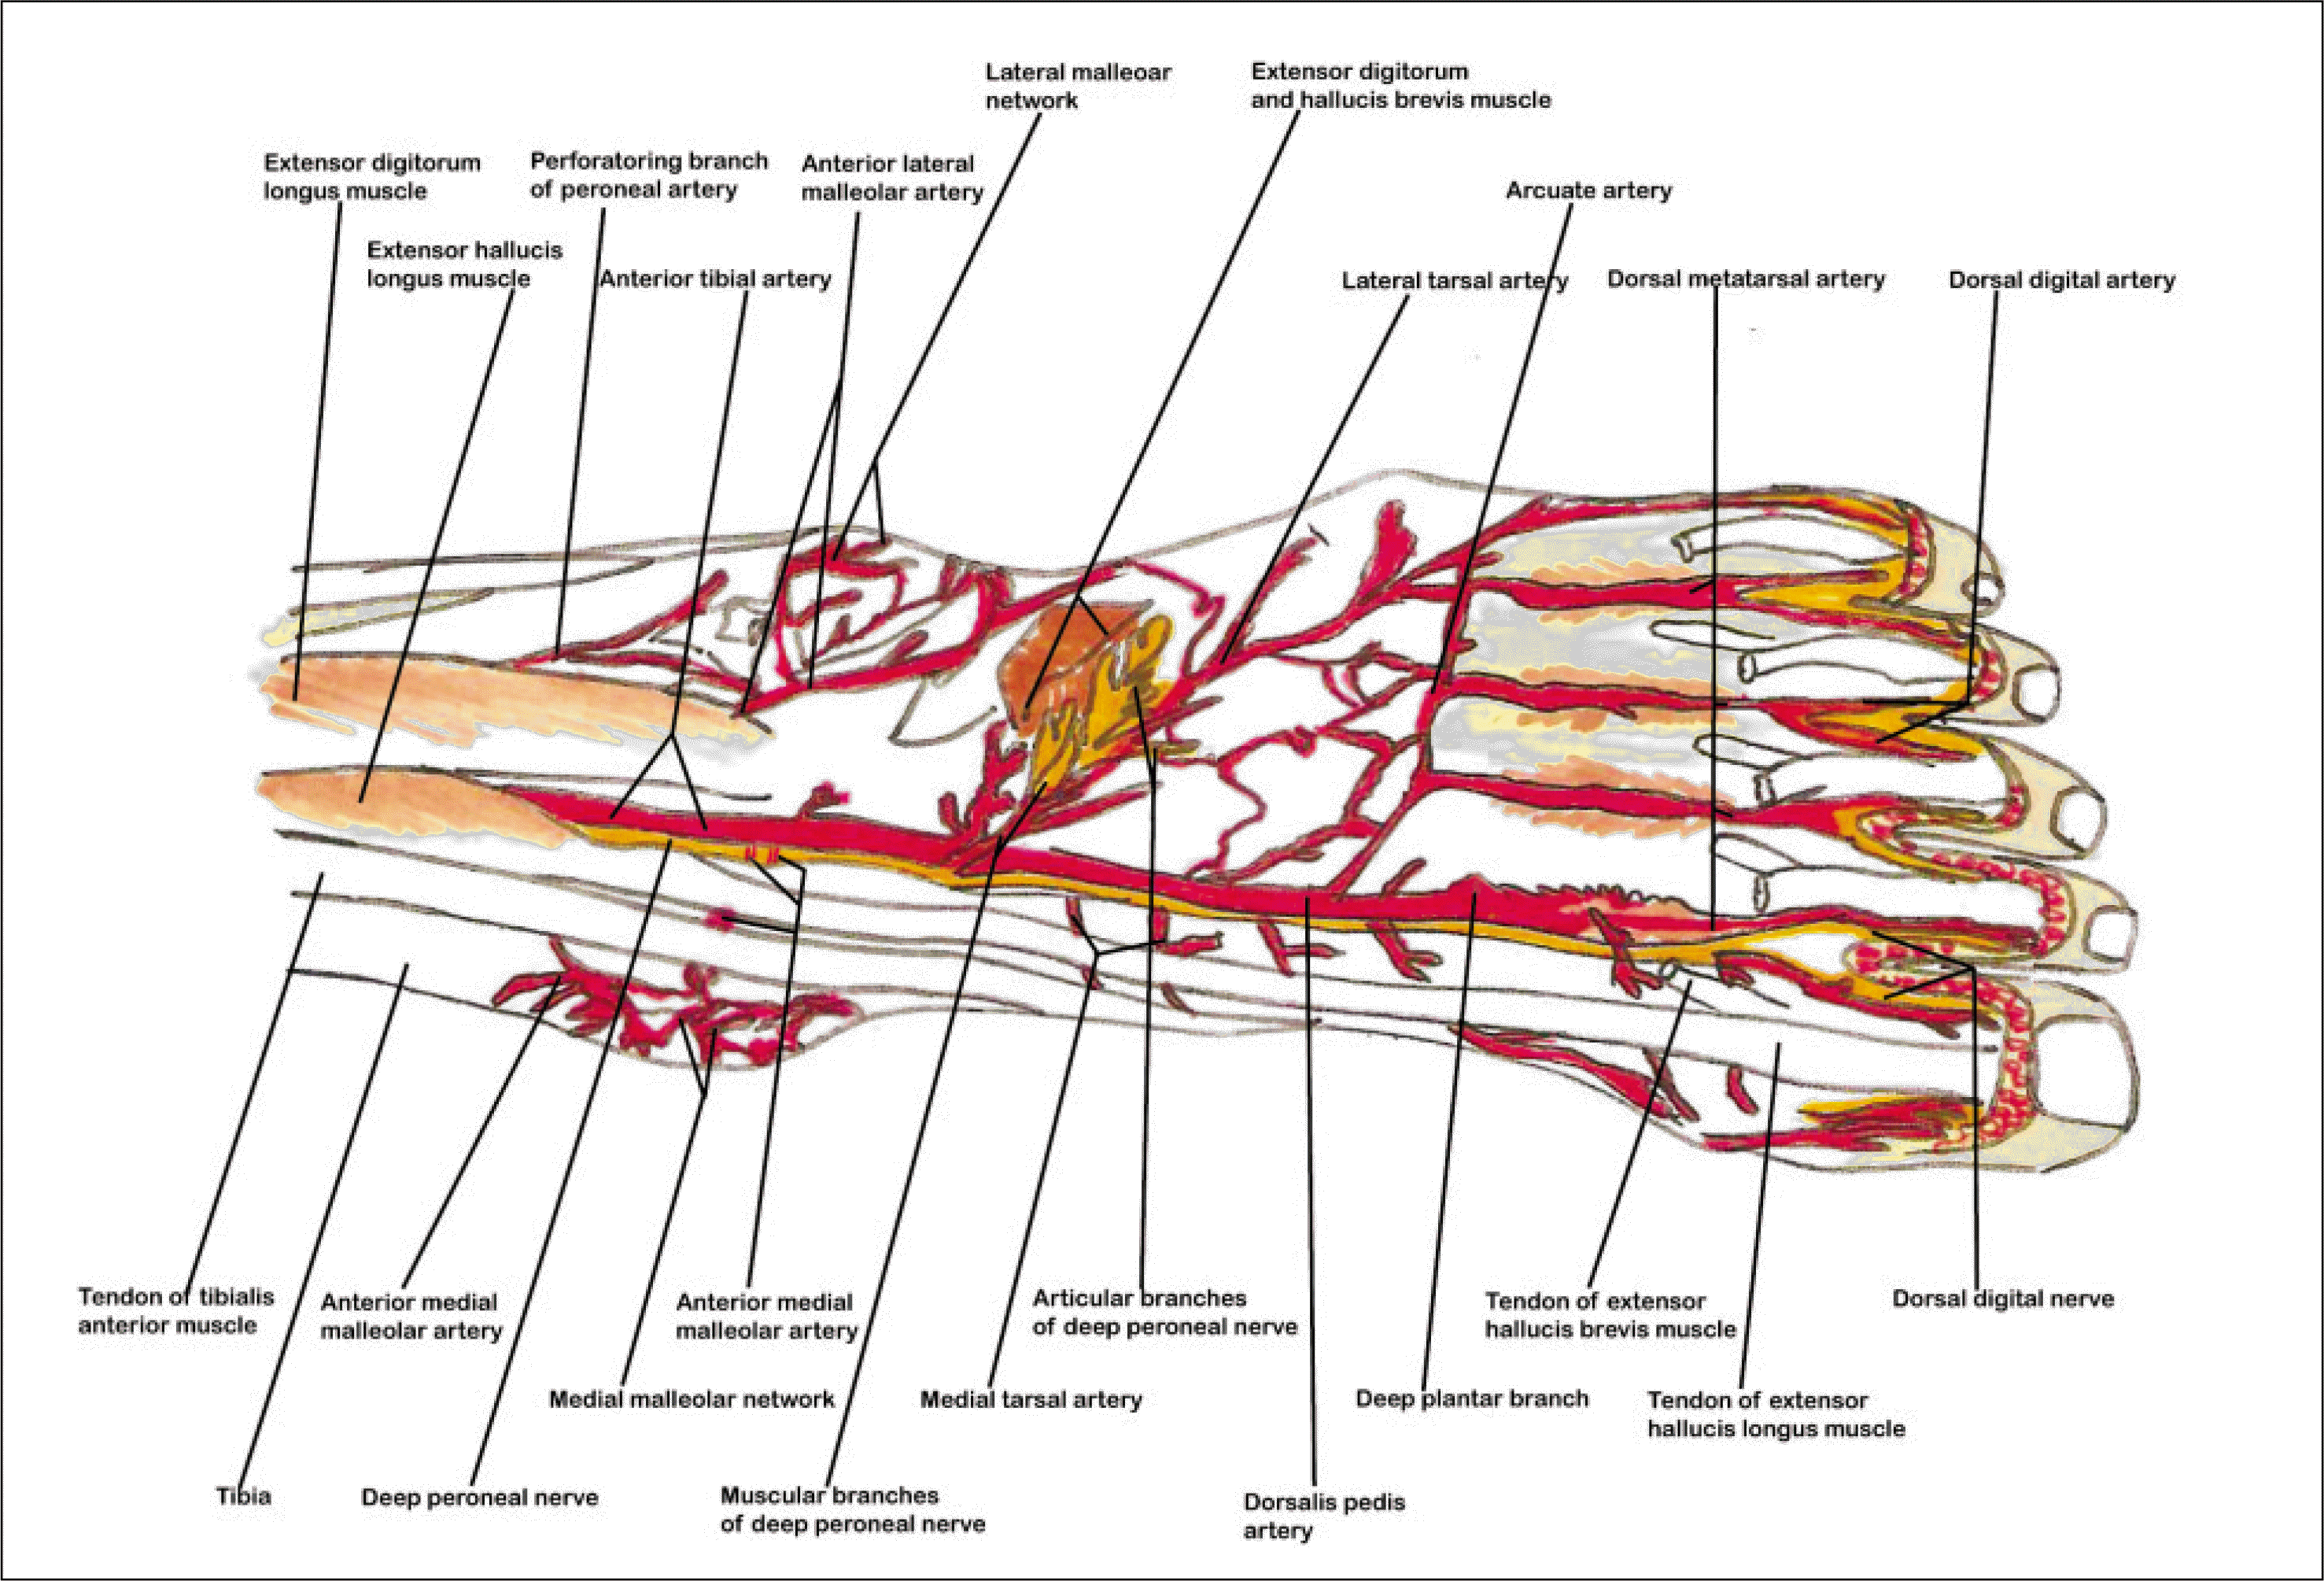 dorsalis pedis artery